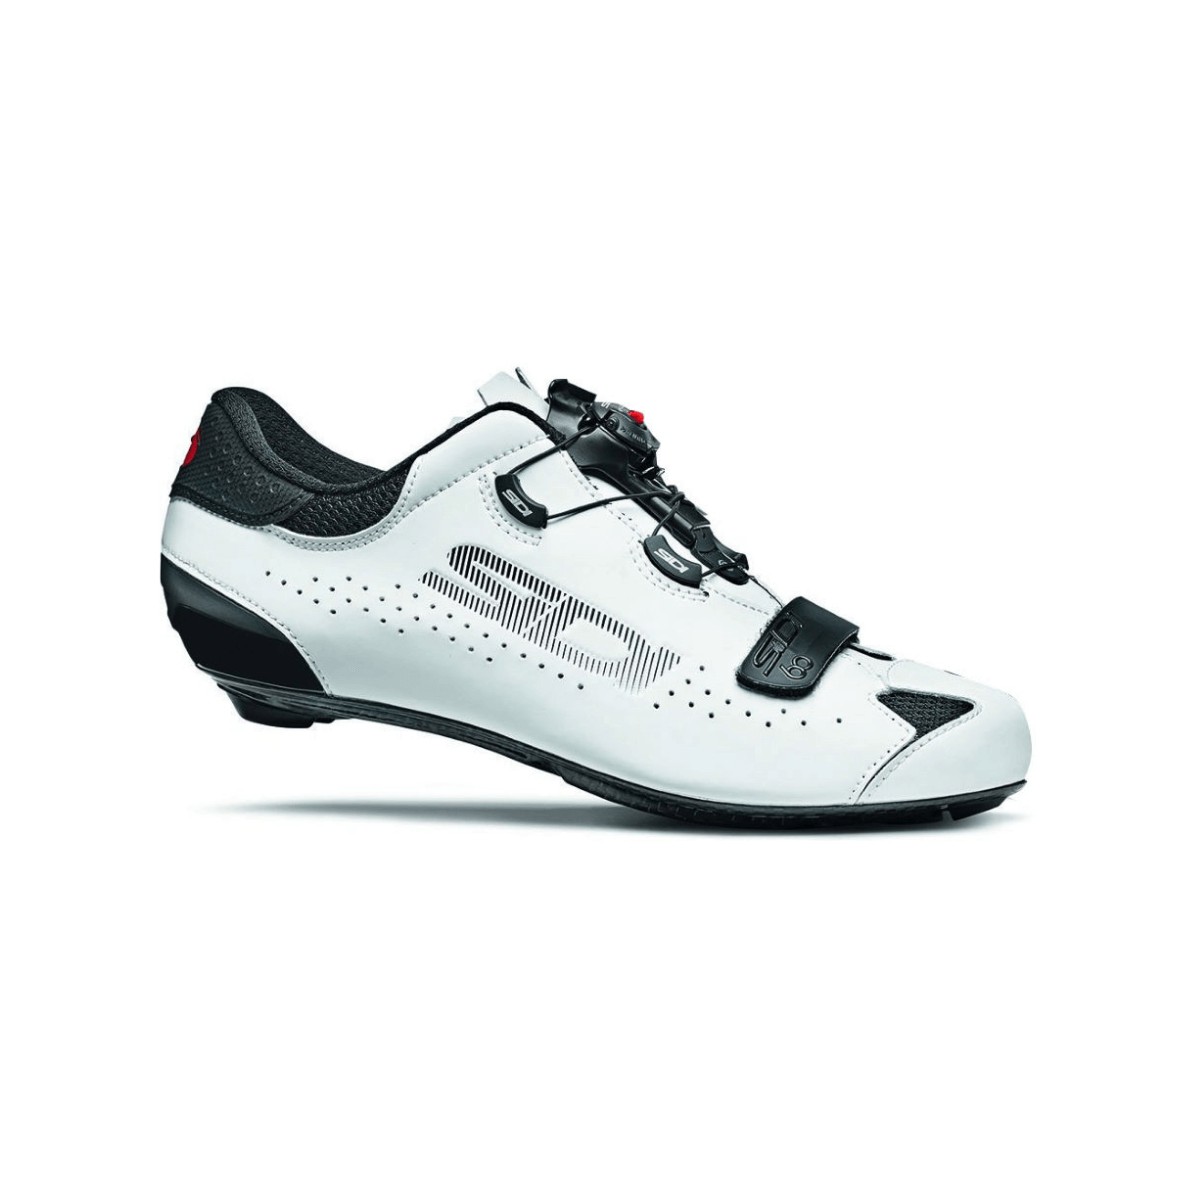 Sidi Sixty Schuhe Schwarz Weiß, Größe 42 - EUR